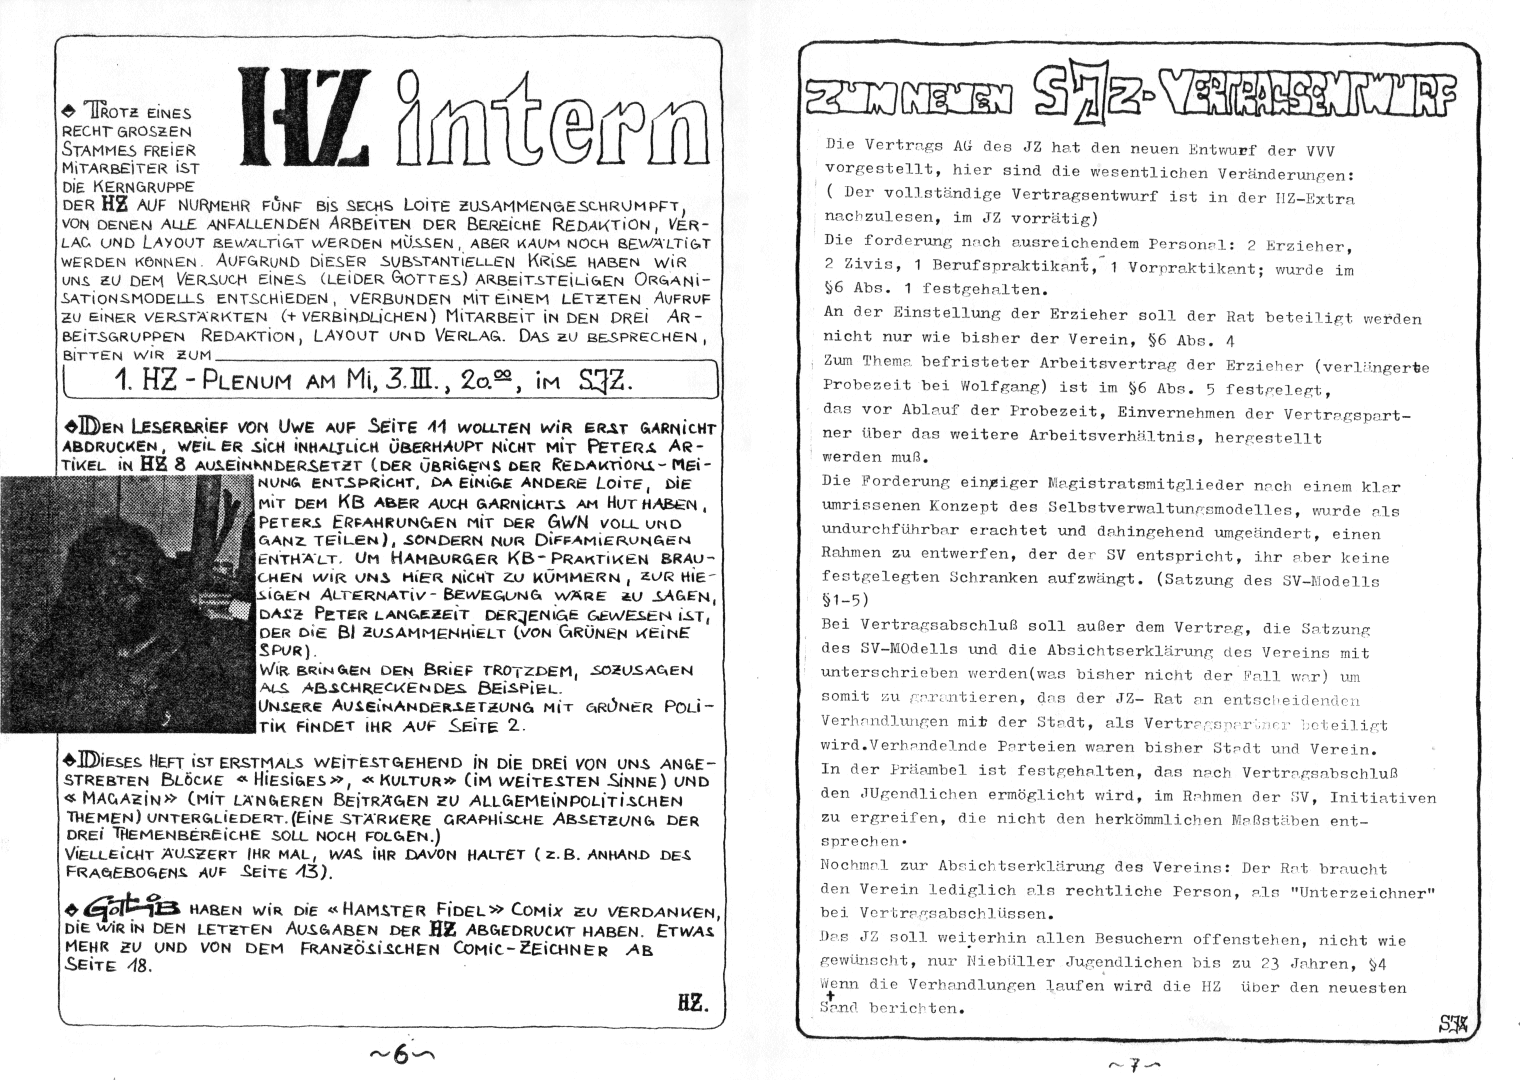 HZ 9 - Seite 6 und 7